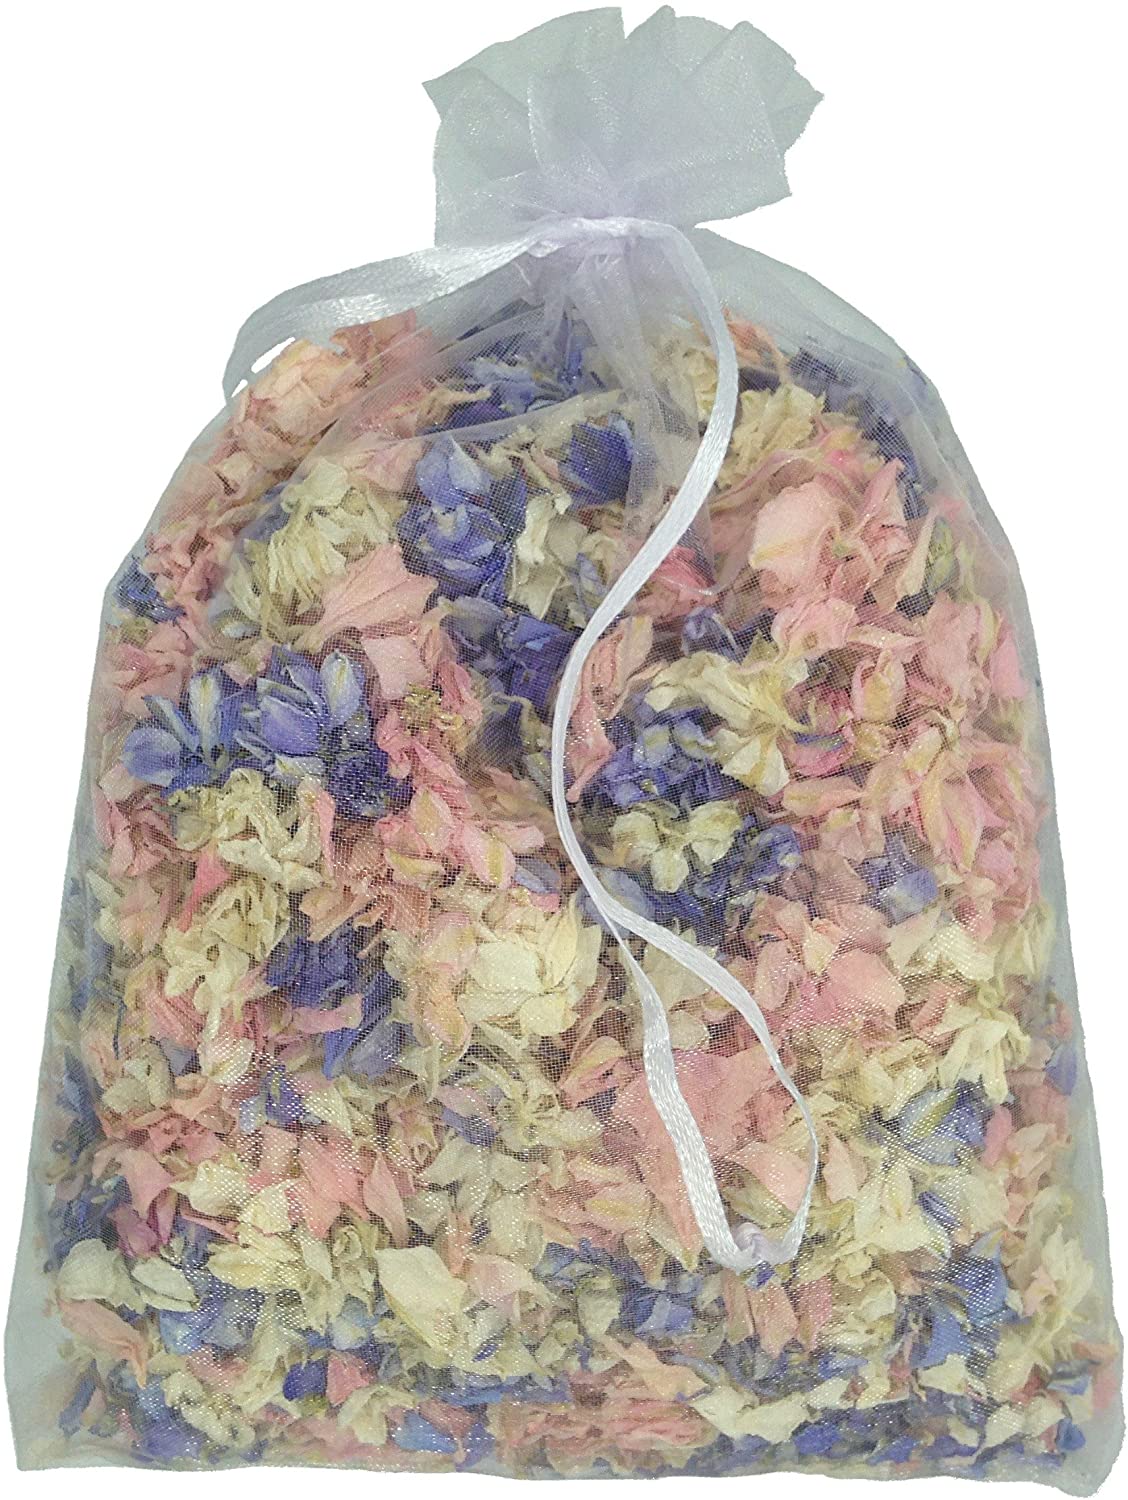 white  mix Delphinium confetti Petals biodegradable Natural bluebell 1200 